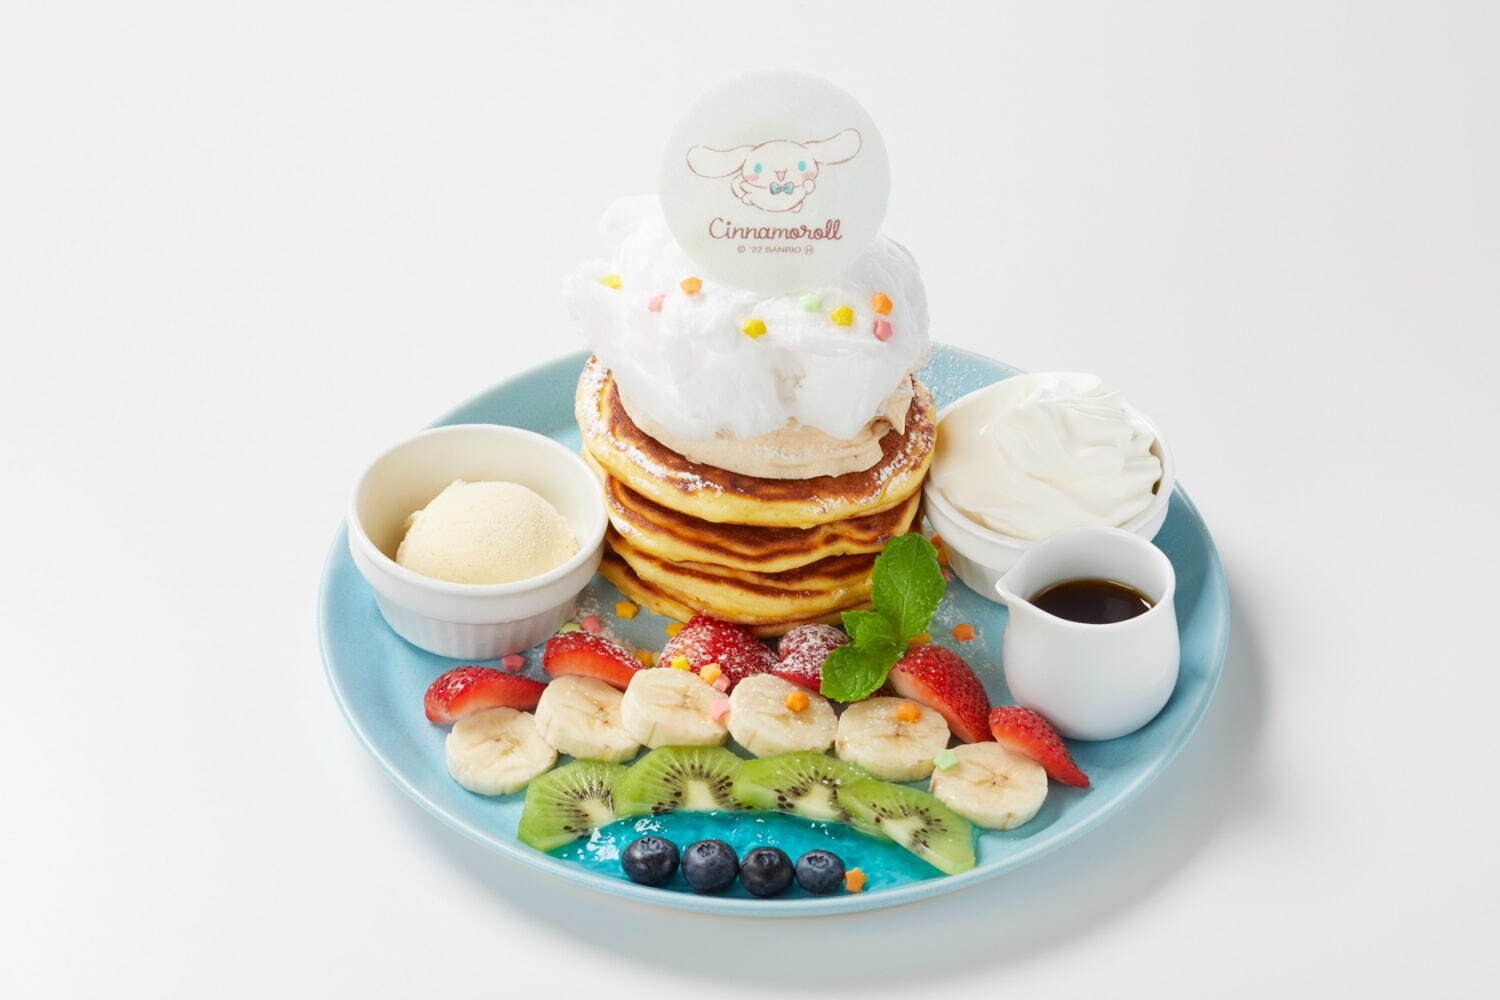 「シナモロール虹のお空パンケーキ」1,628円